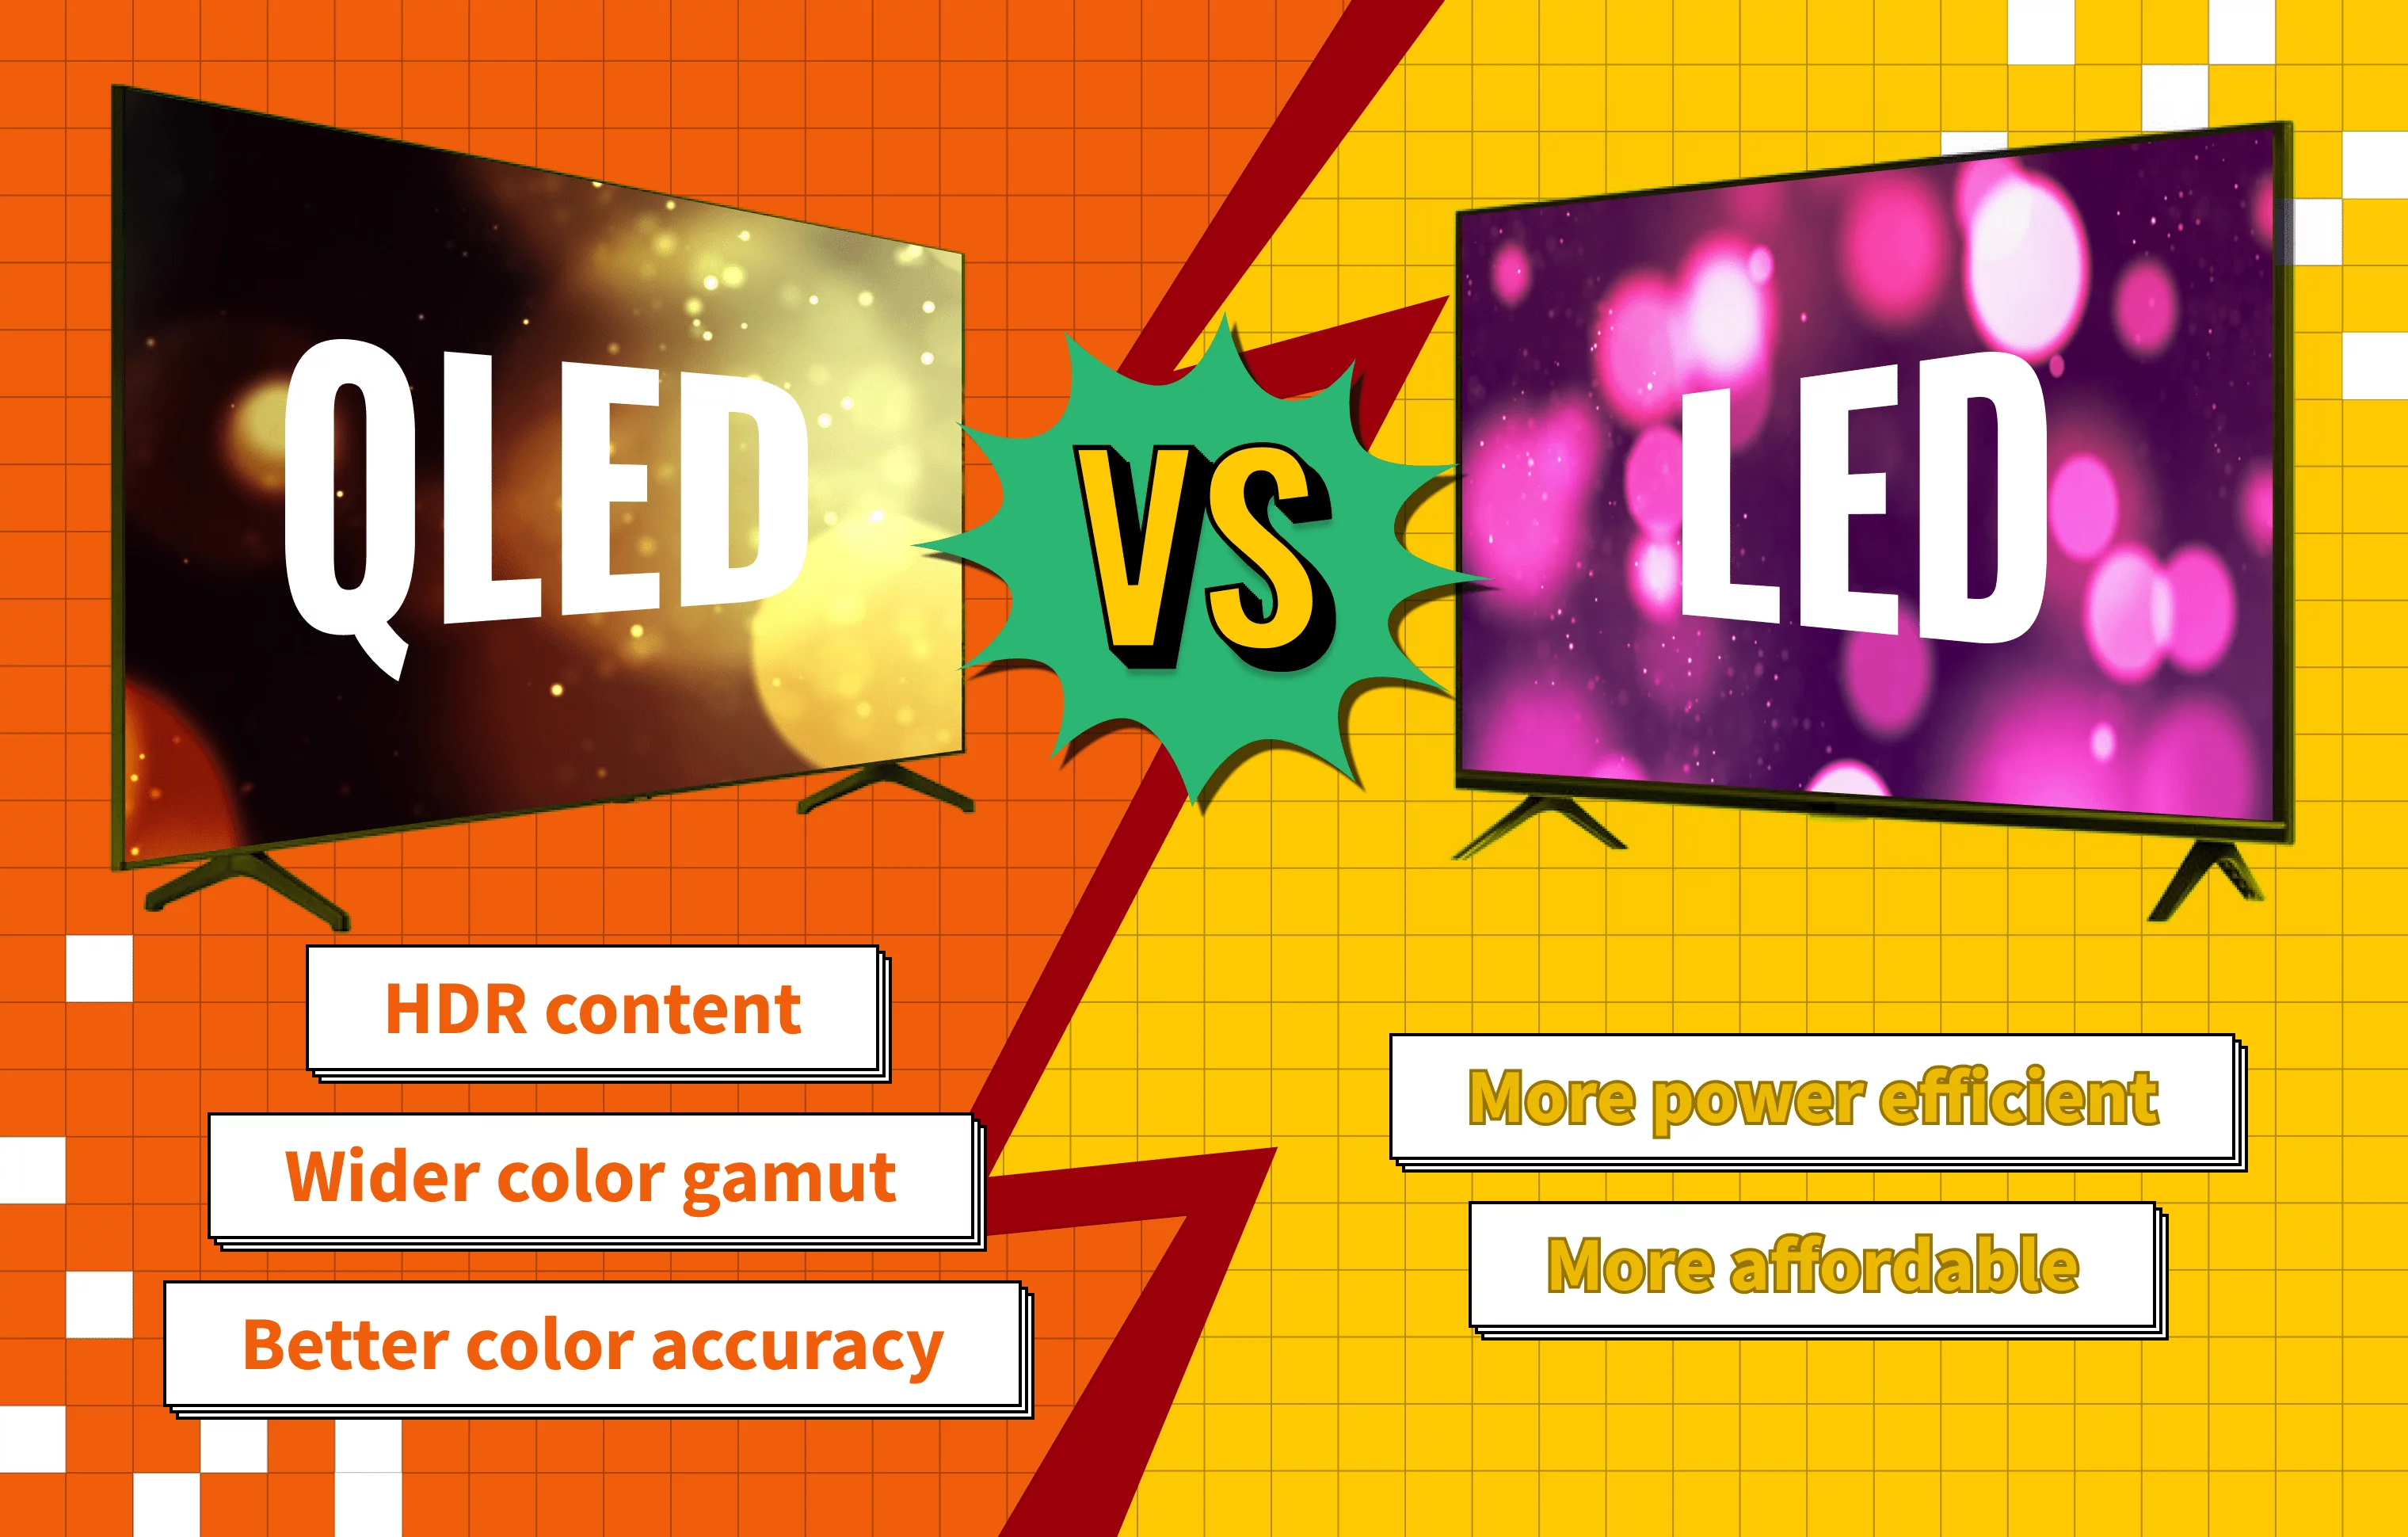 QLED vs LED